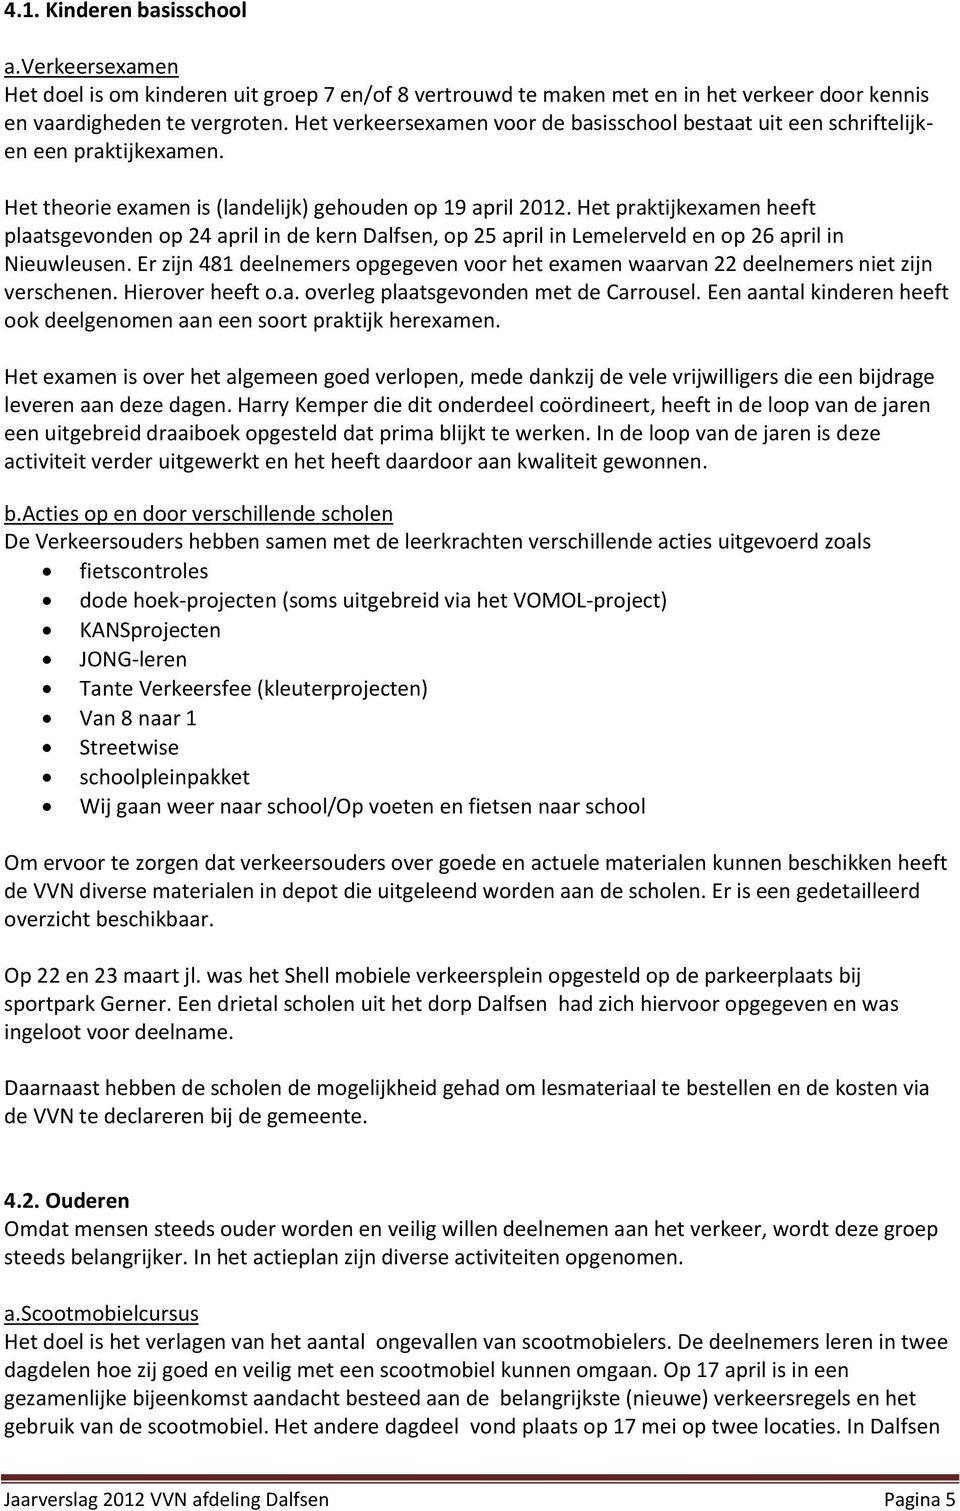 Het praktijkexamen heeft plaatsgevonden op 24 april in de kern Dalfsen, op 25 april in Lemelerveld en op 26 april in Nieuwleusen.